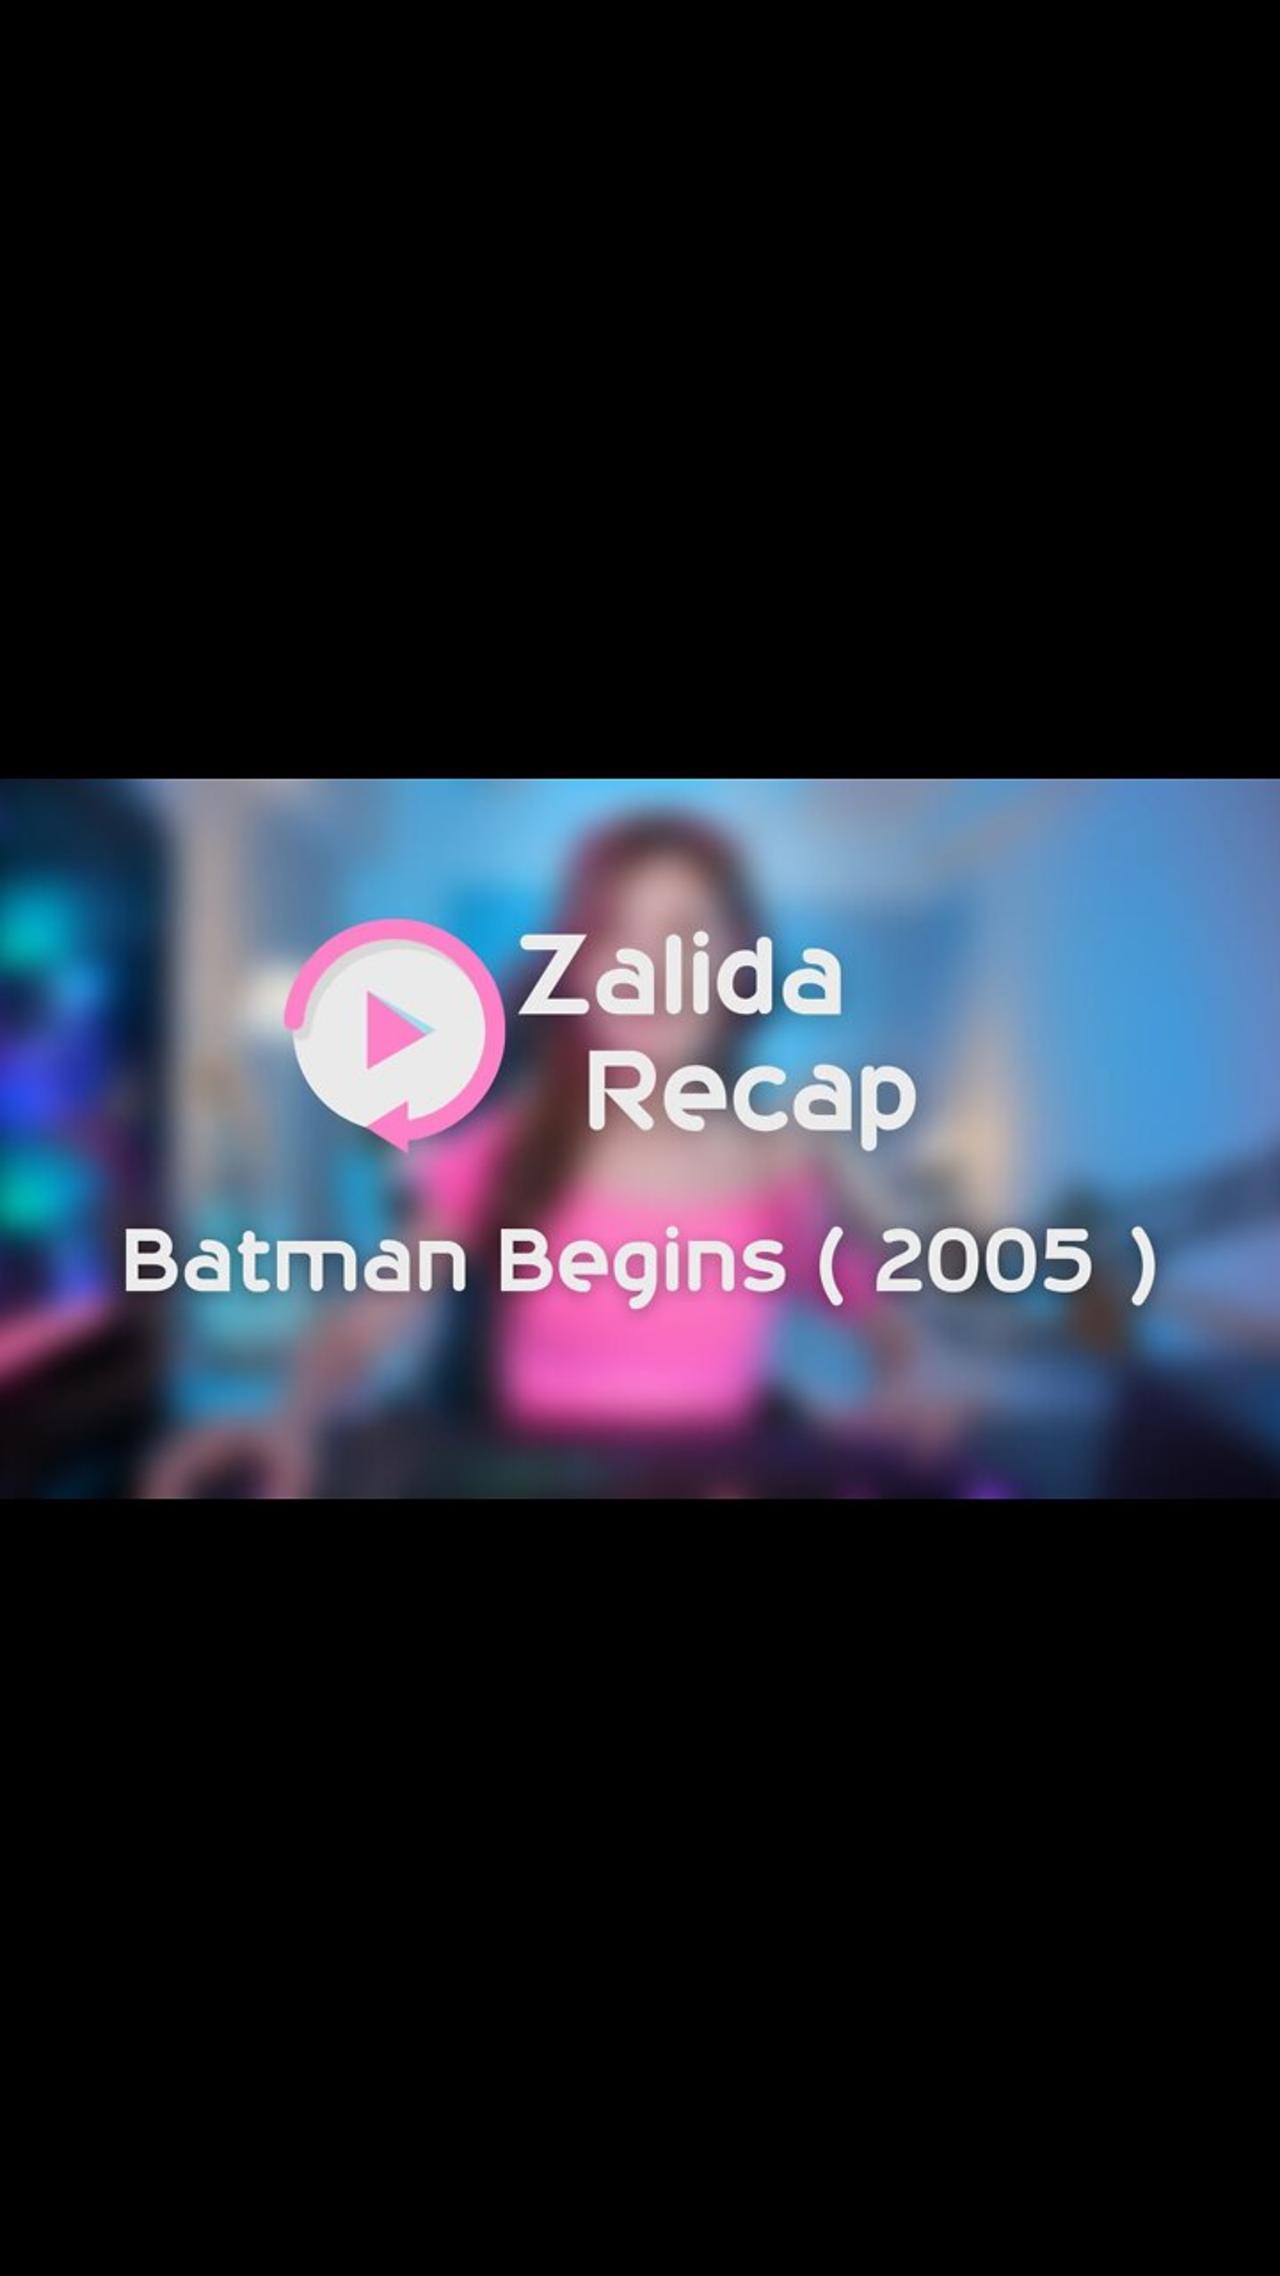 Batman Begins ( 2005 ) - Movie Recap Summary